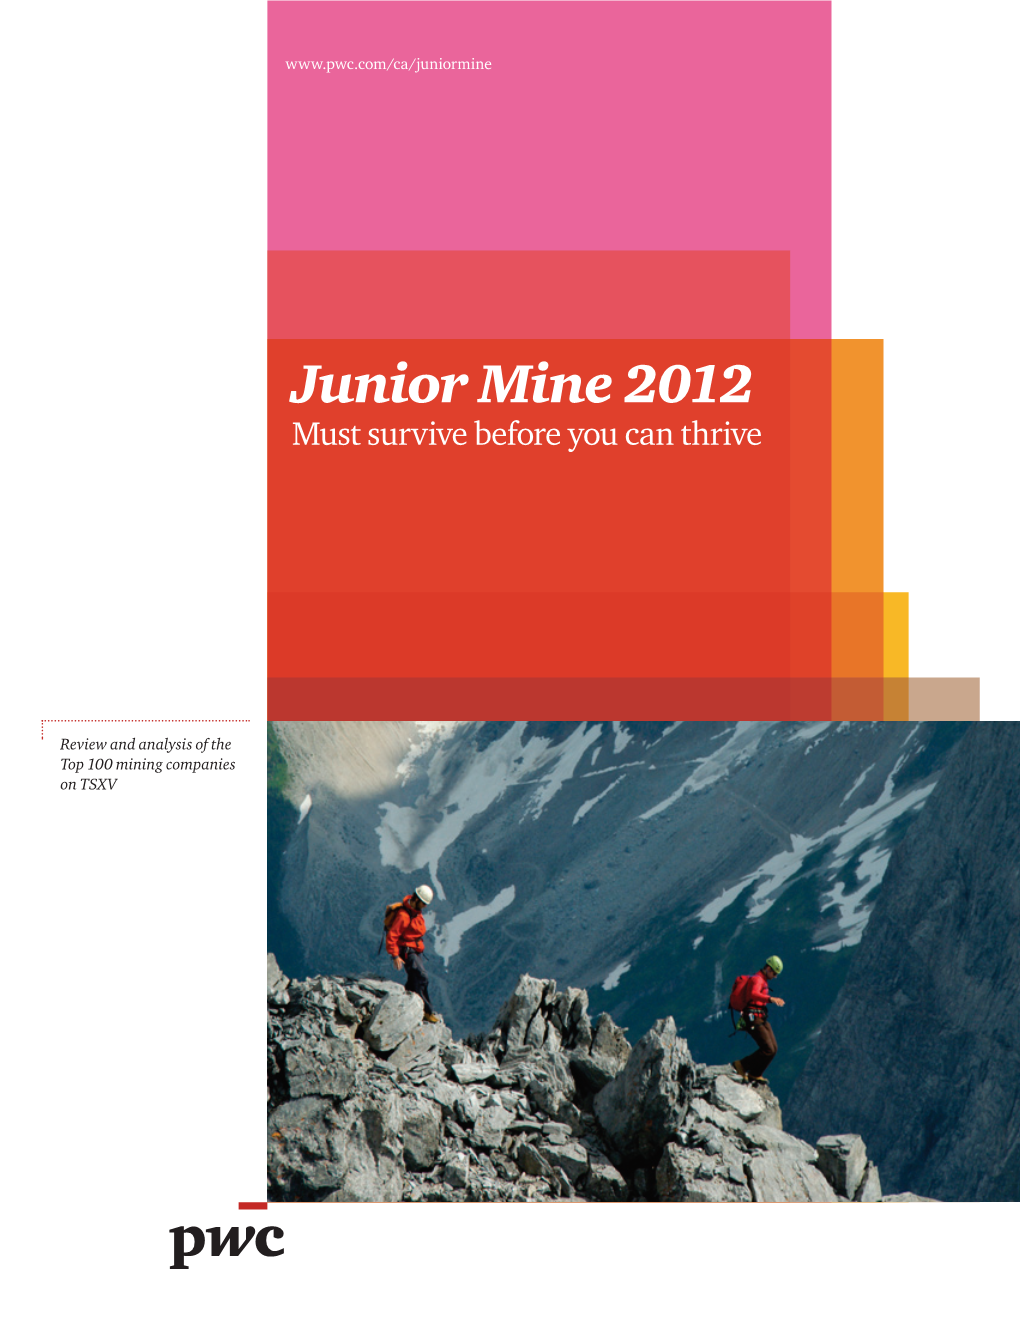 Pwc-Junior-Rmine-2012-11-En